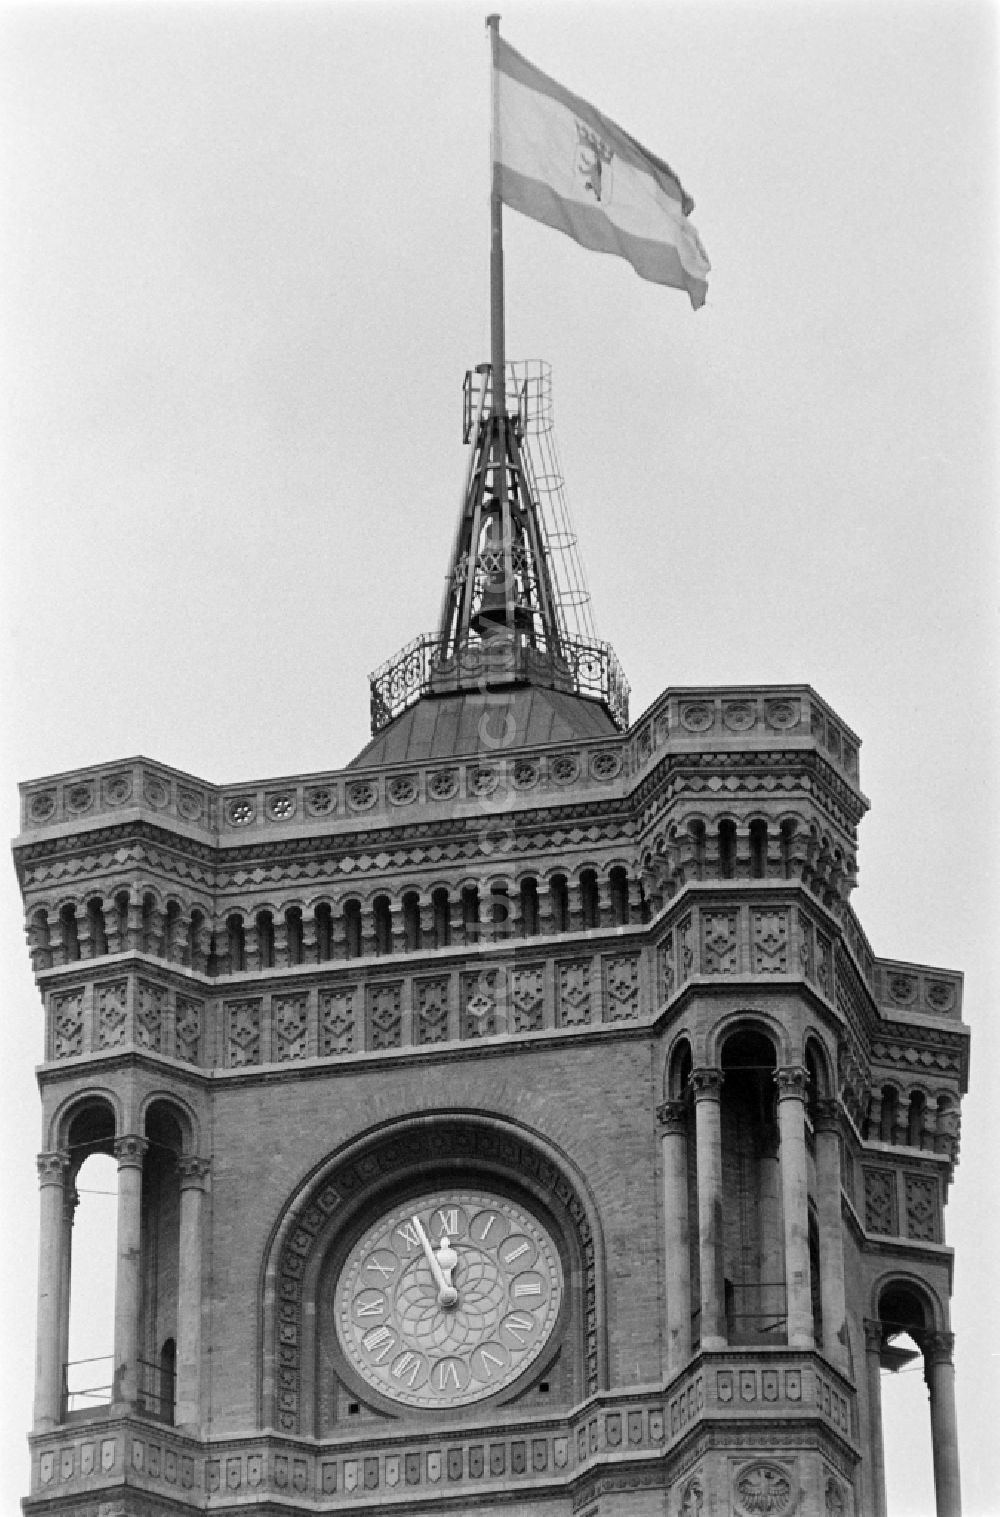 DDR-Fotoarchiv: Berlin - Rathausuhr am Roten Rathaus in Berlin-Mitte